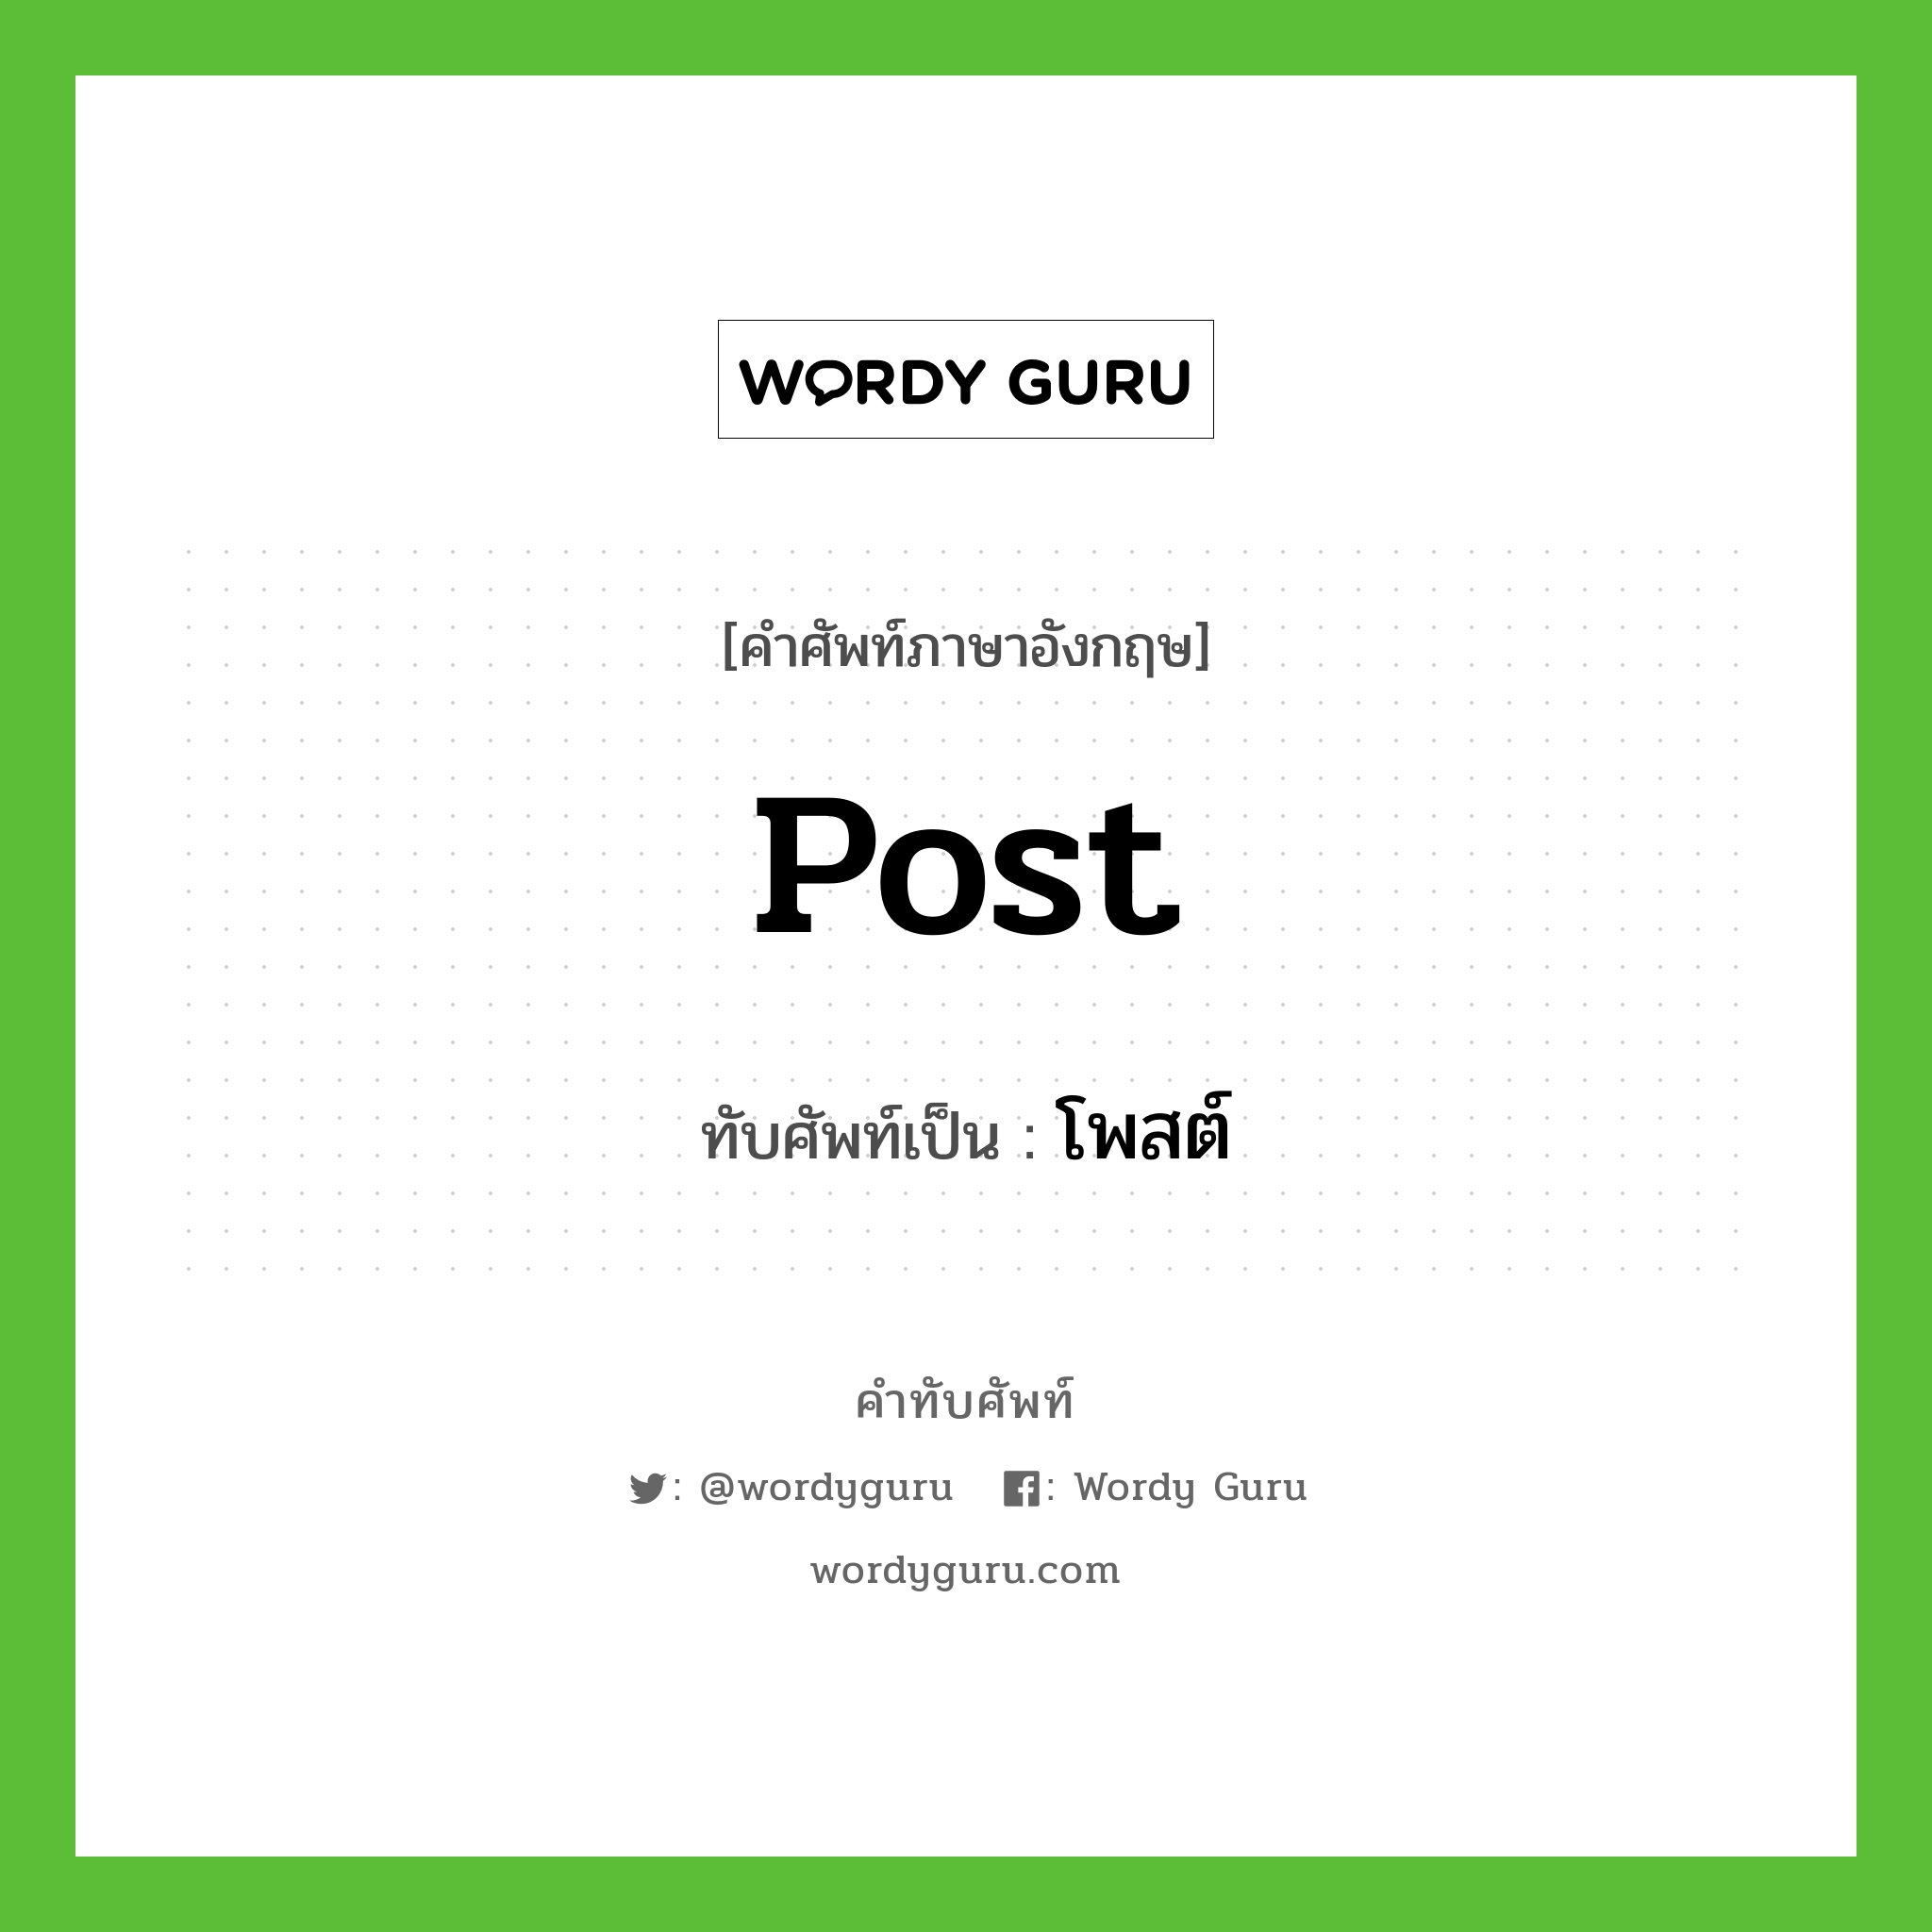 Post เขียนเป็นคำไทยว่าอะไร?, คำศัพท์ภาษาอังกฤษ Post ทับศัพท์เป็น โพสต์